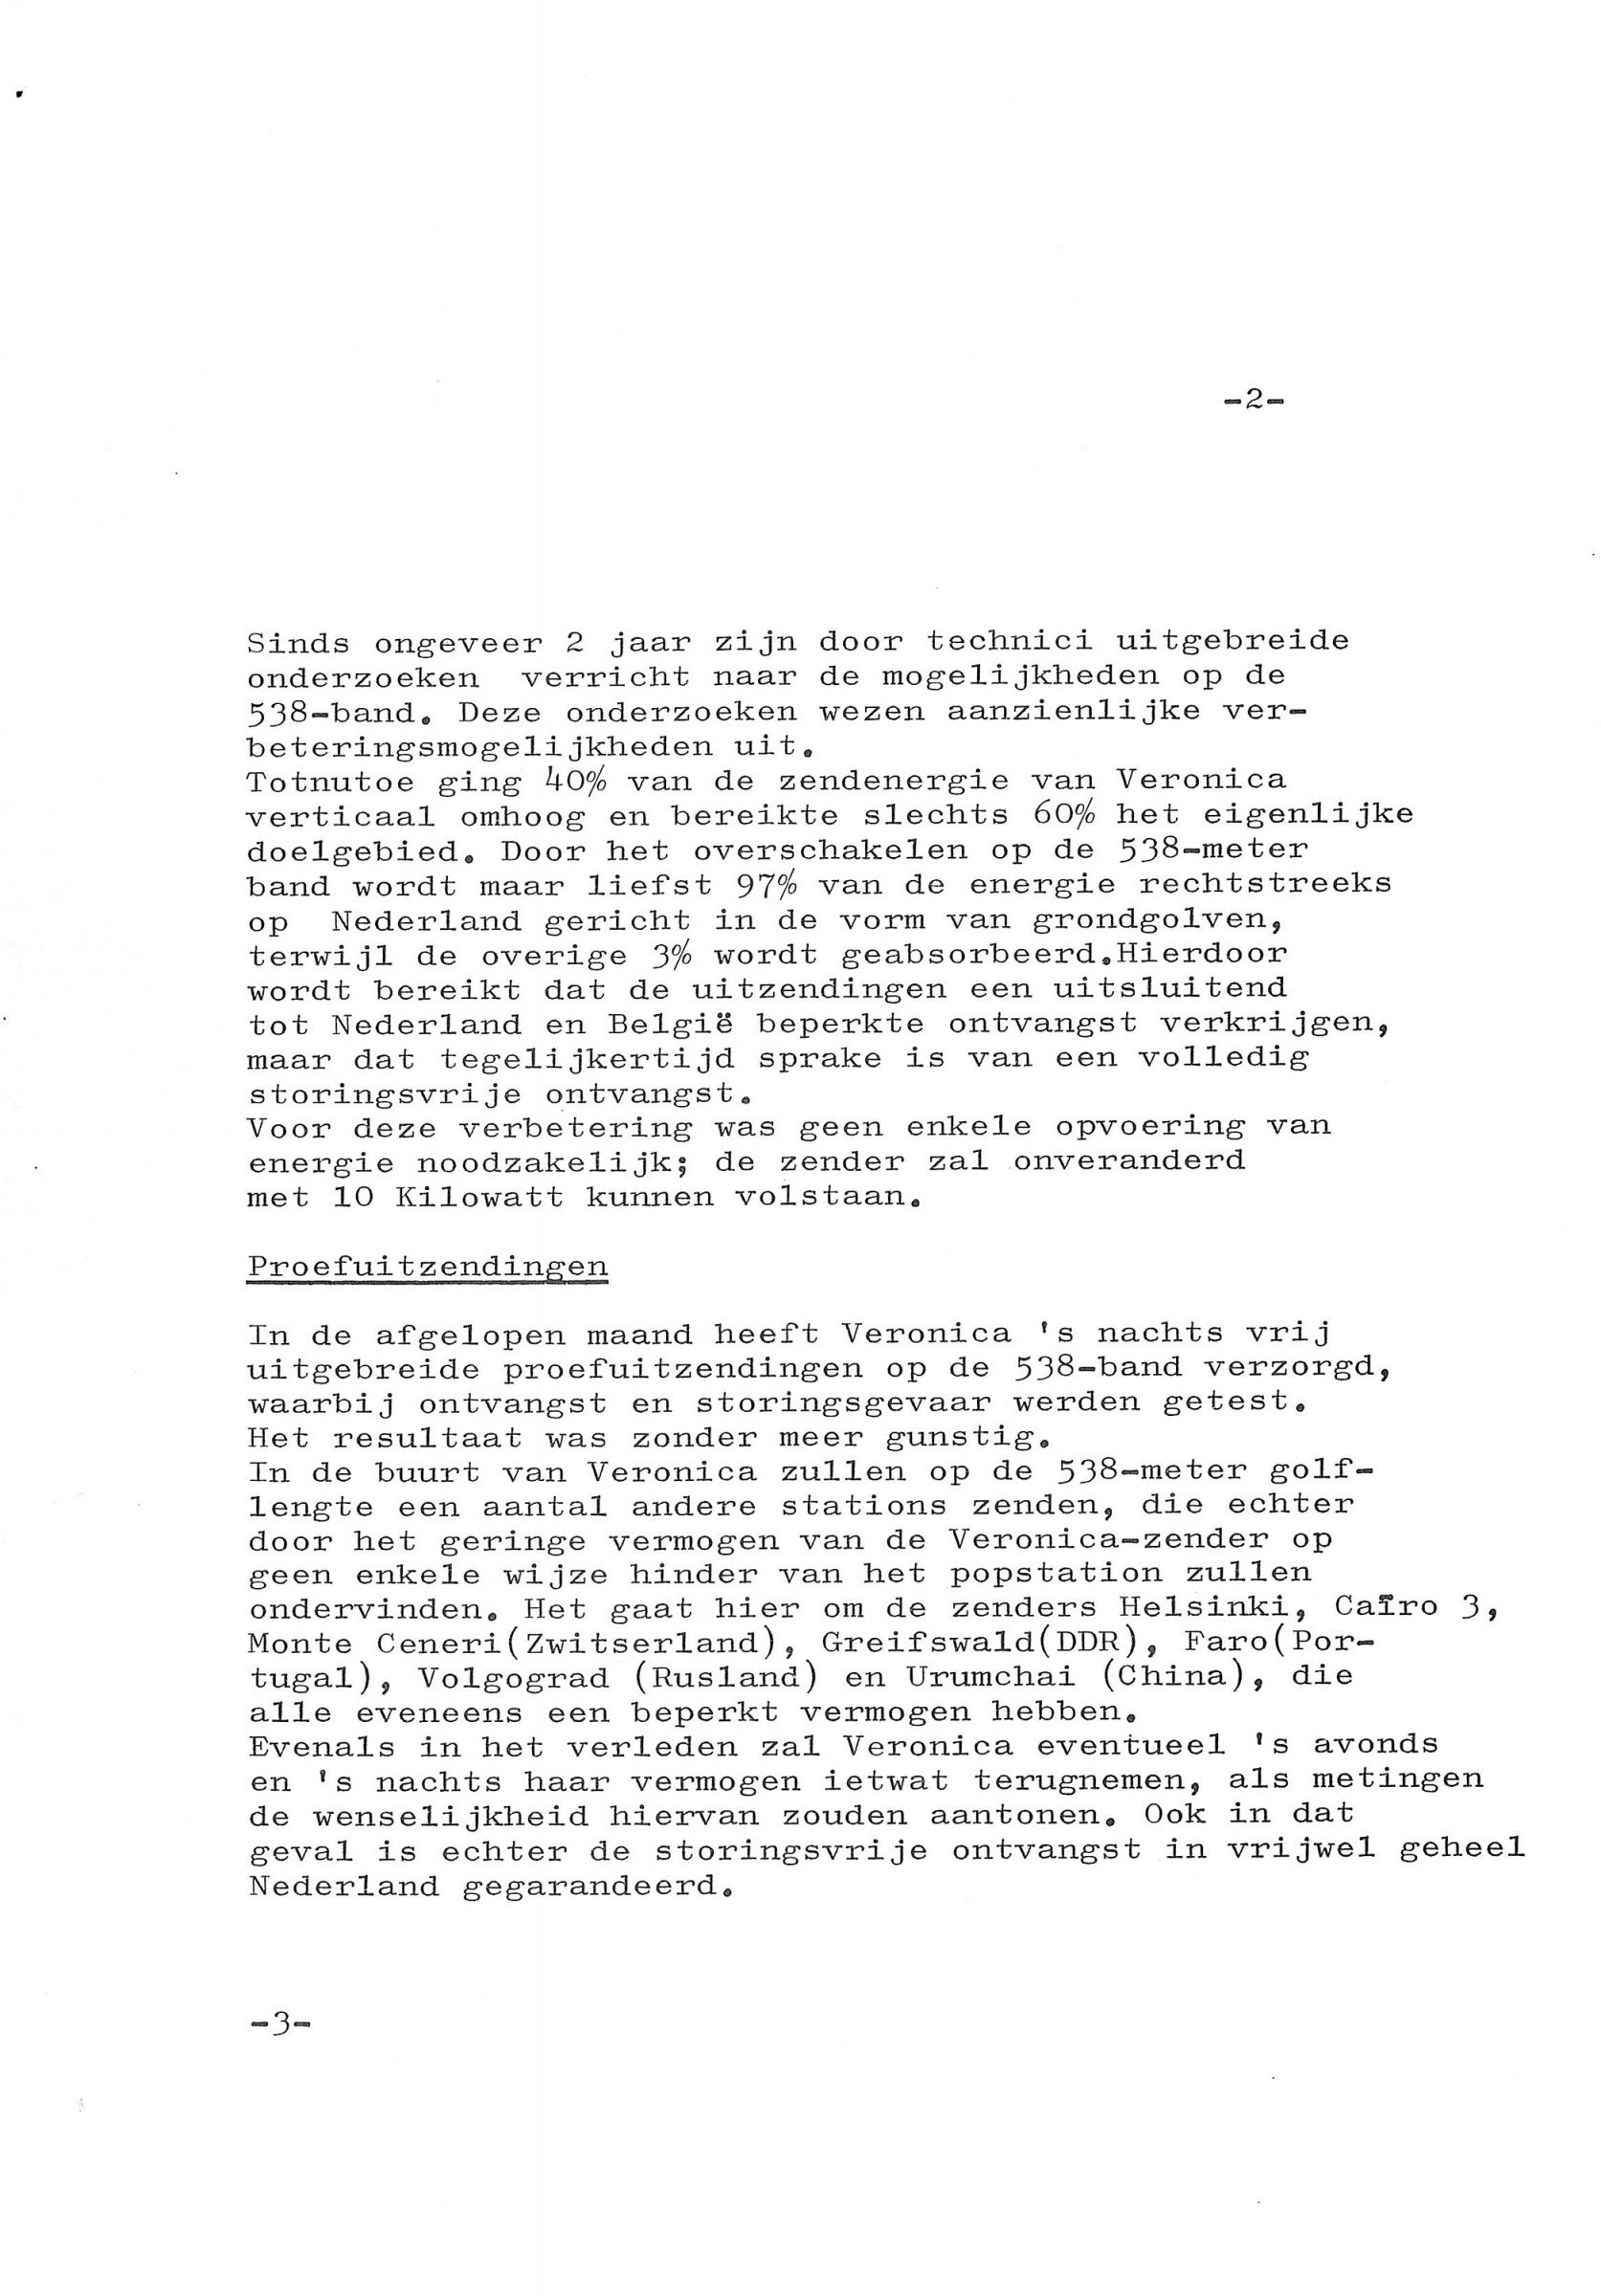 19720915_Directie persbericht frequentiewissel 03.jpg